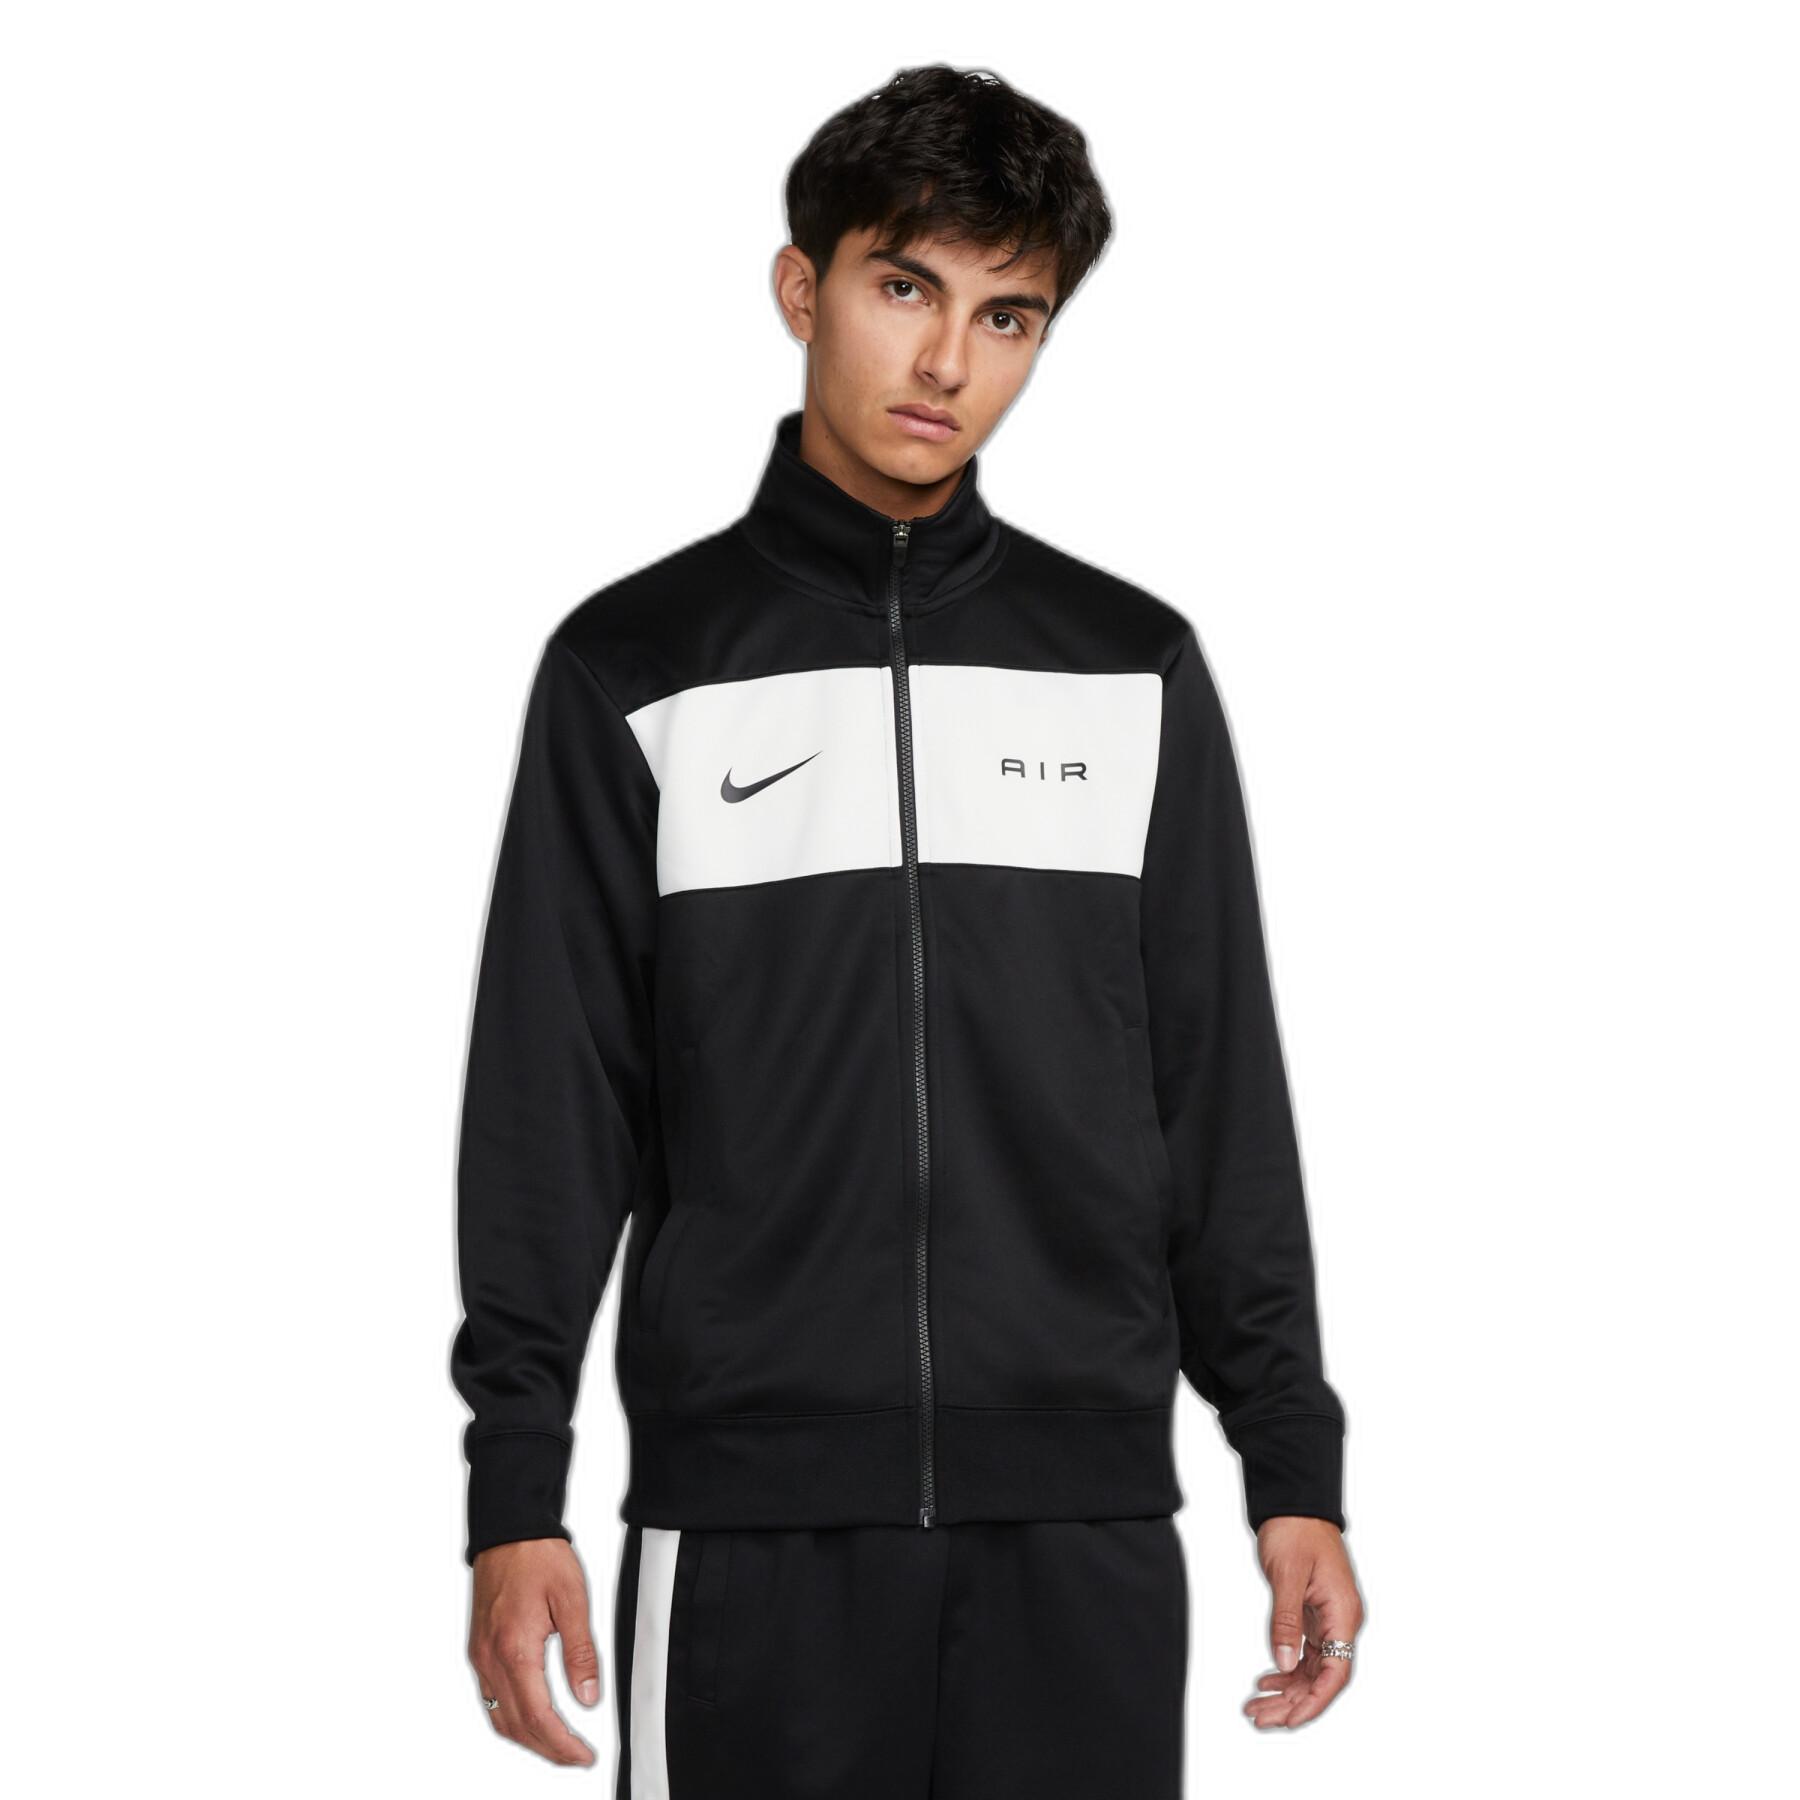 Waterproof jacket Nike Air PK - Men's clothing - Lifestyle